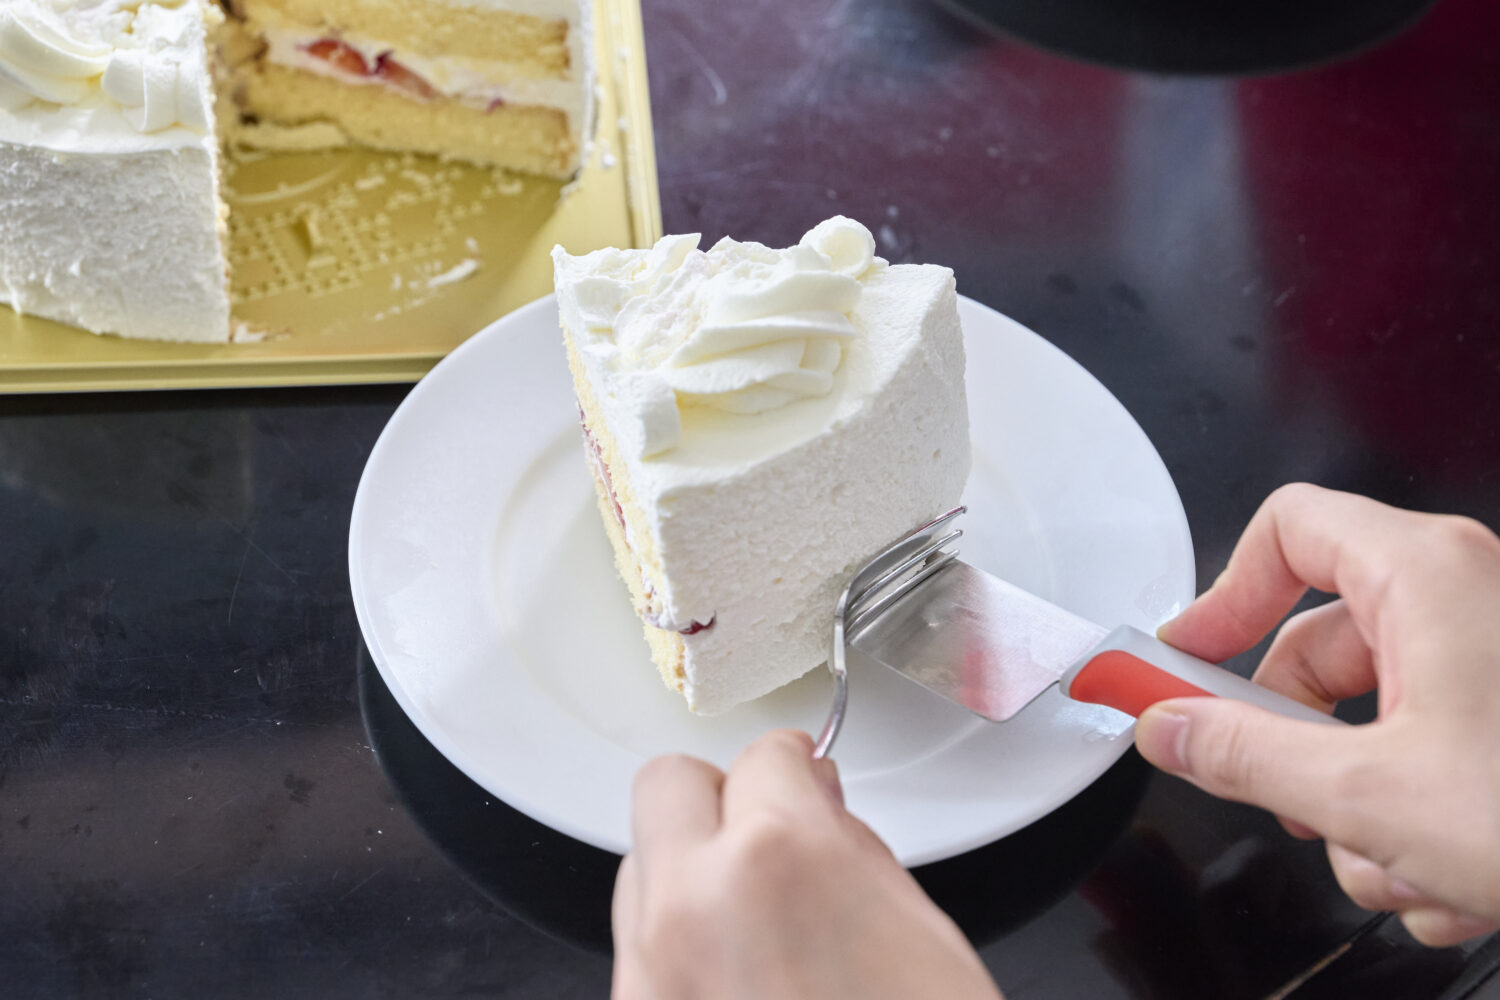 皿へケーキを移したら、フォークなどで押さえながらやさしくナイフを抜く